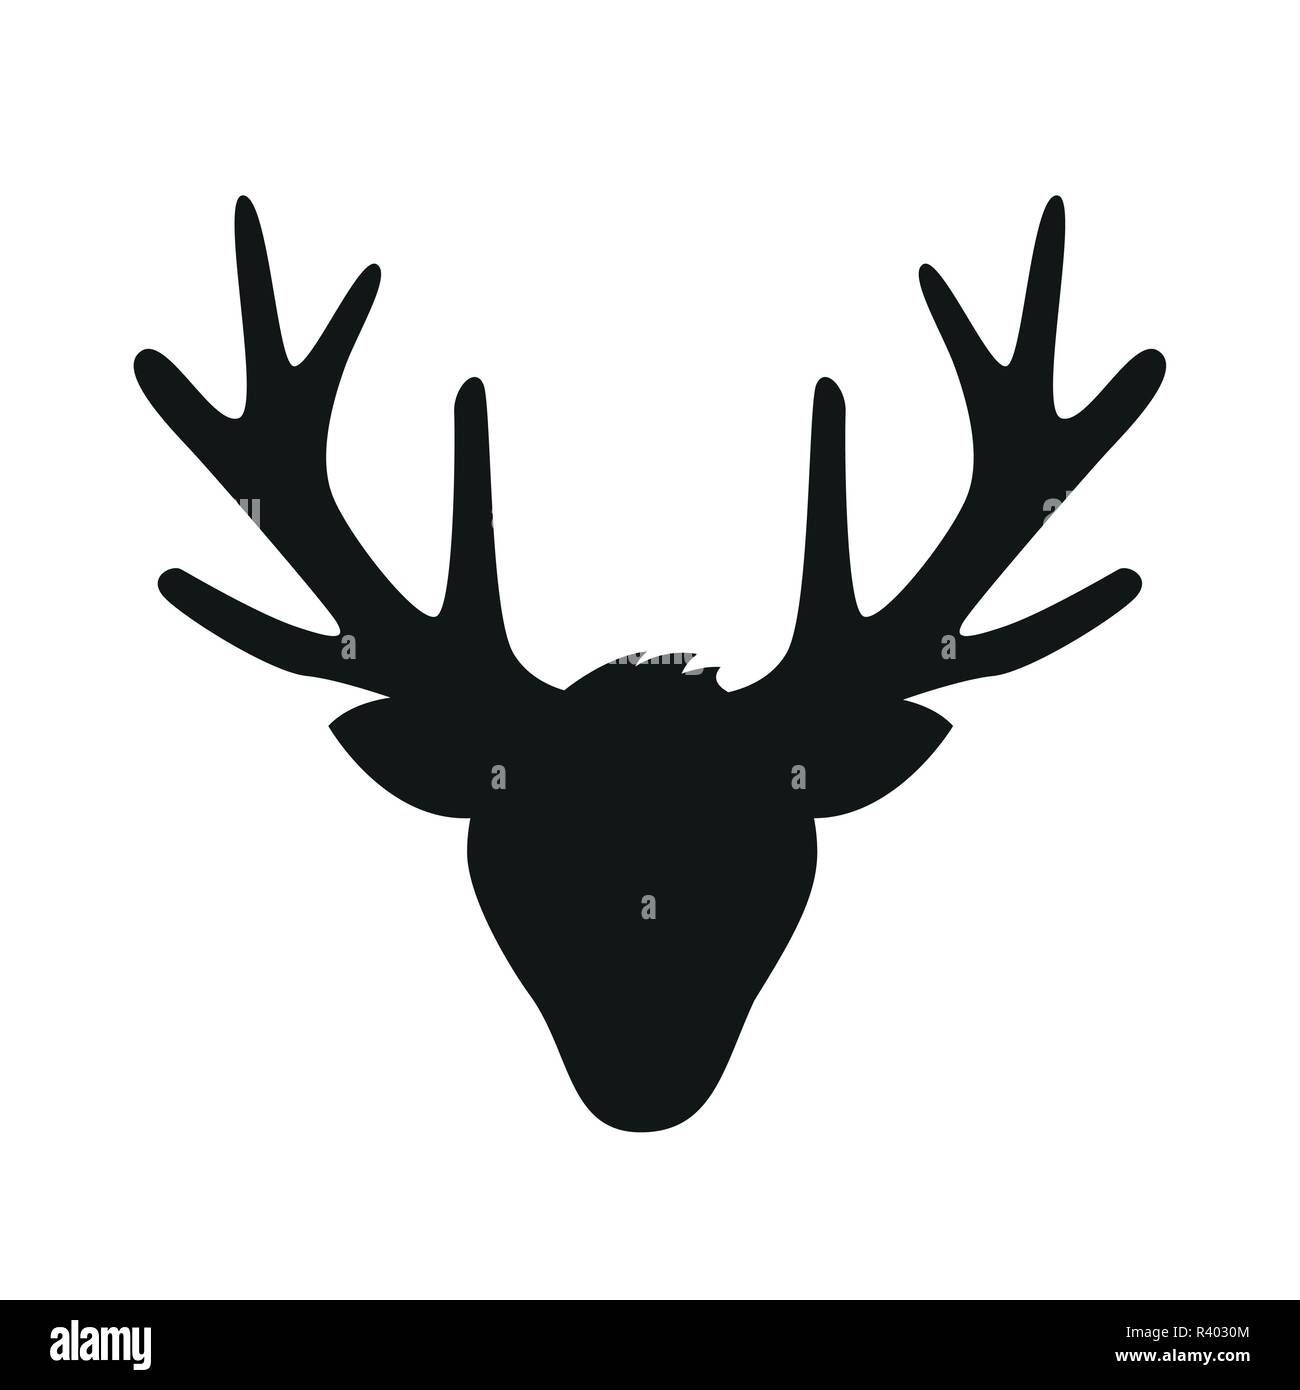 Testa di renne con grandi corna di cervo silhouette isolati su sfondo bianco illustrazione vettoriale EPS10 Illustrazione Vettoriale